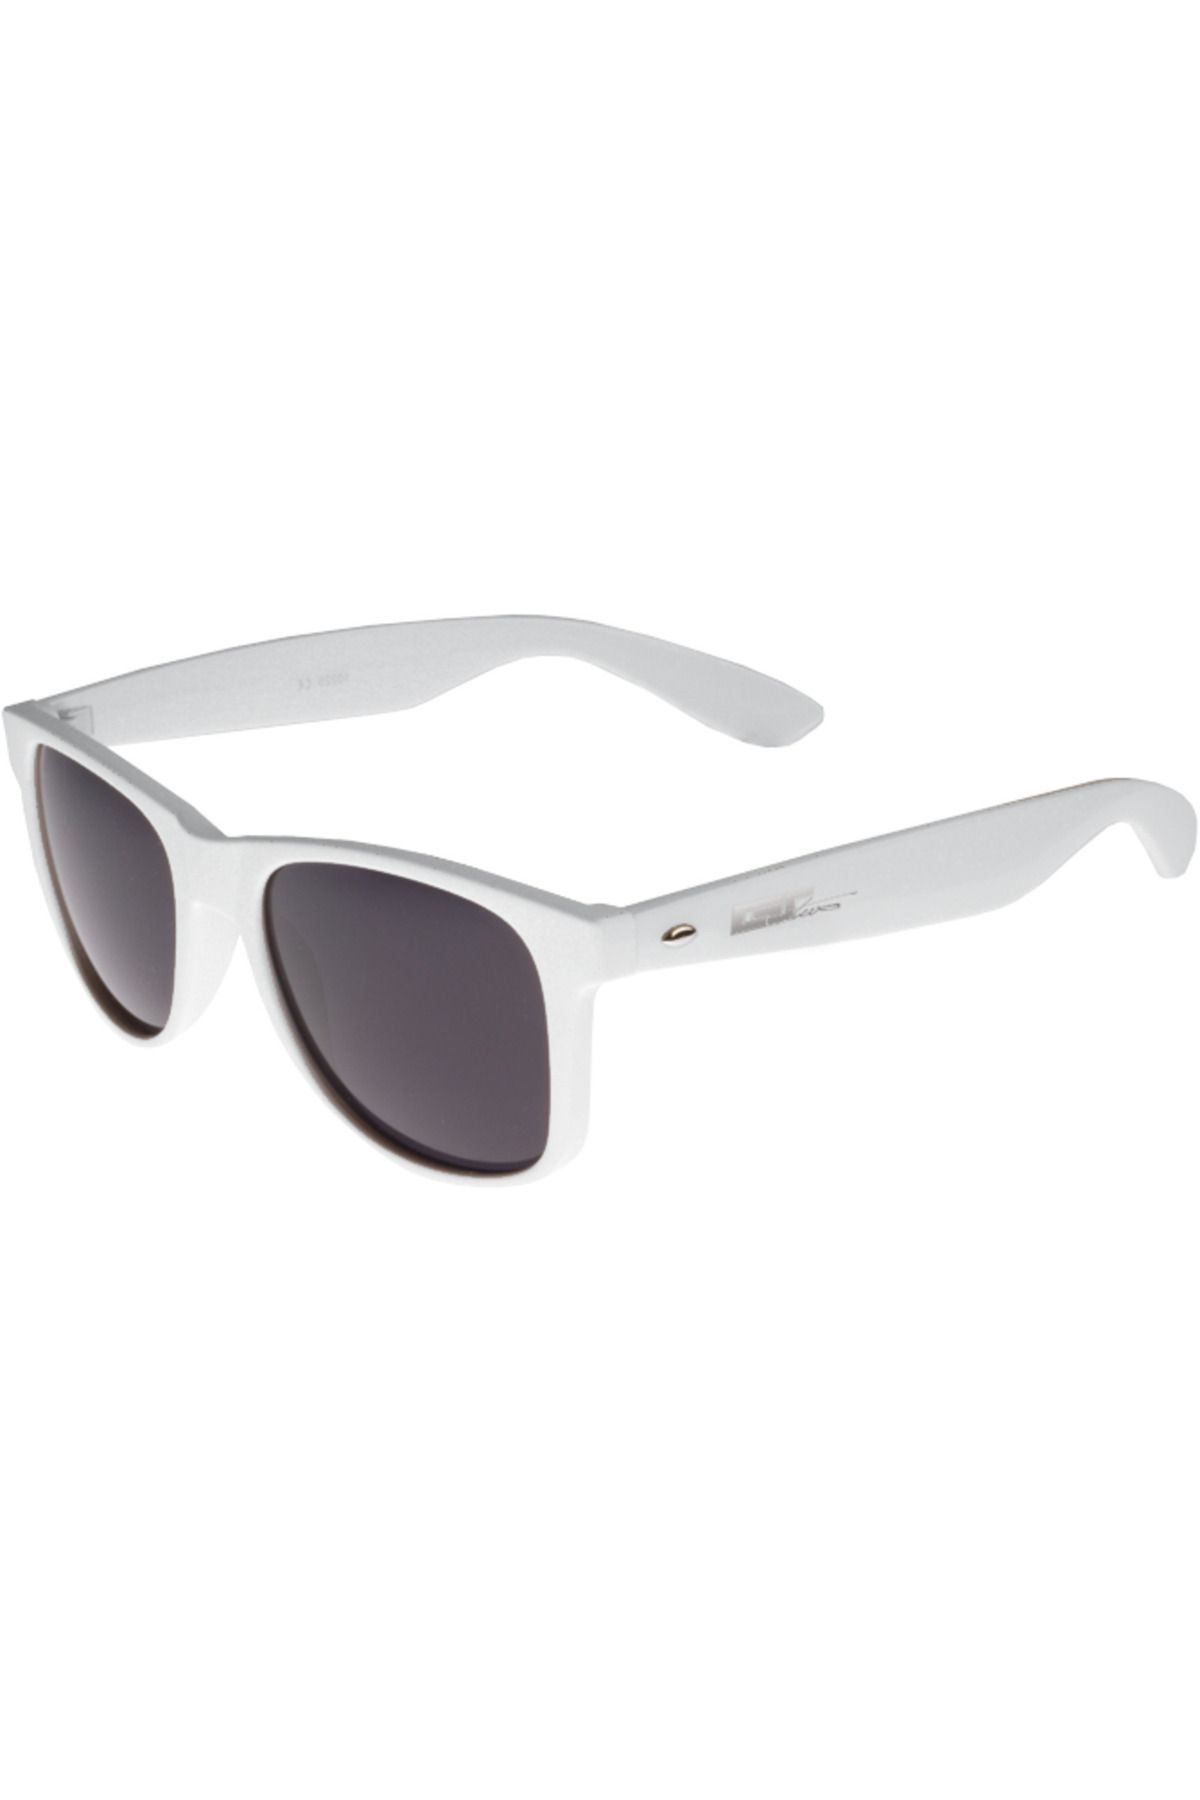 MSTRDS Sunglasses - White - Black - Trendyol